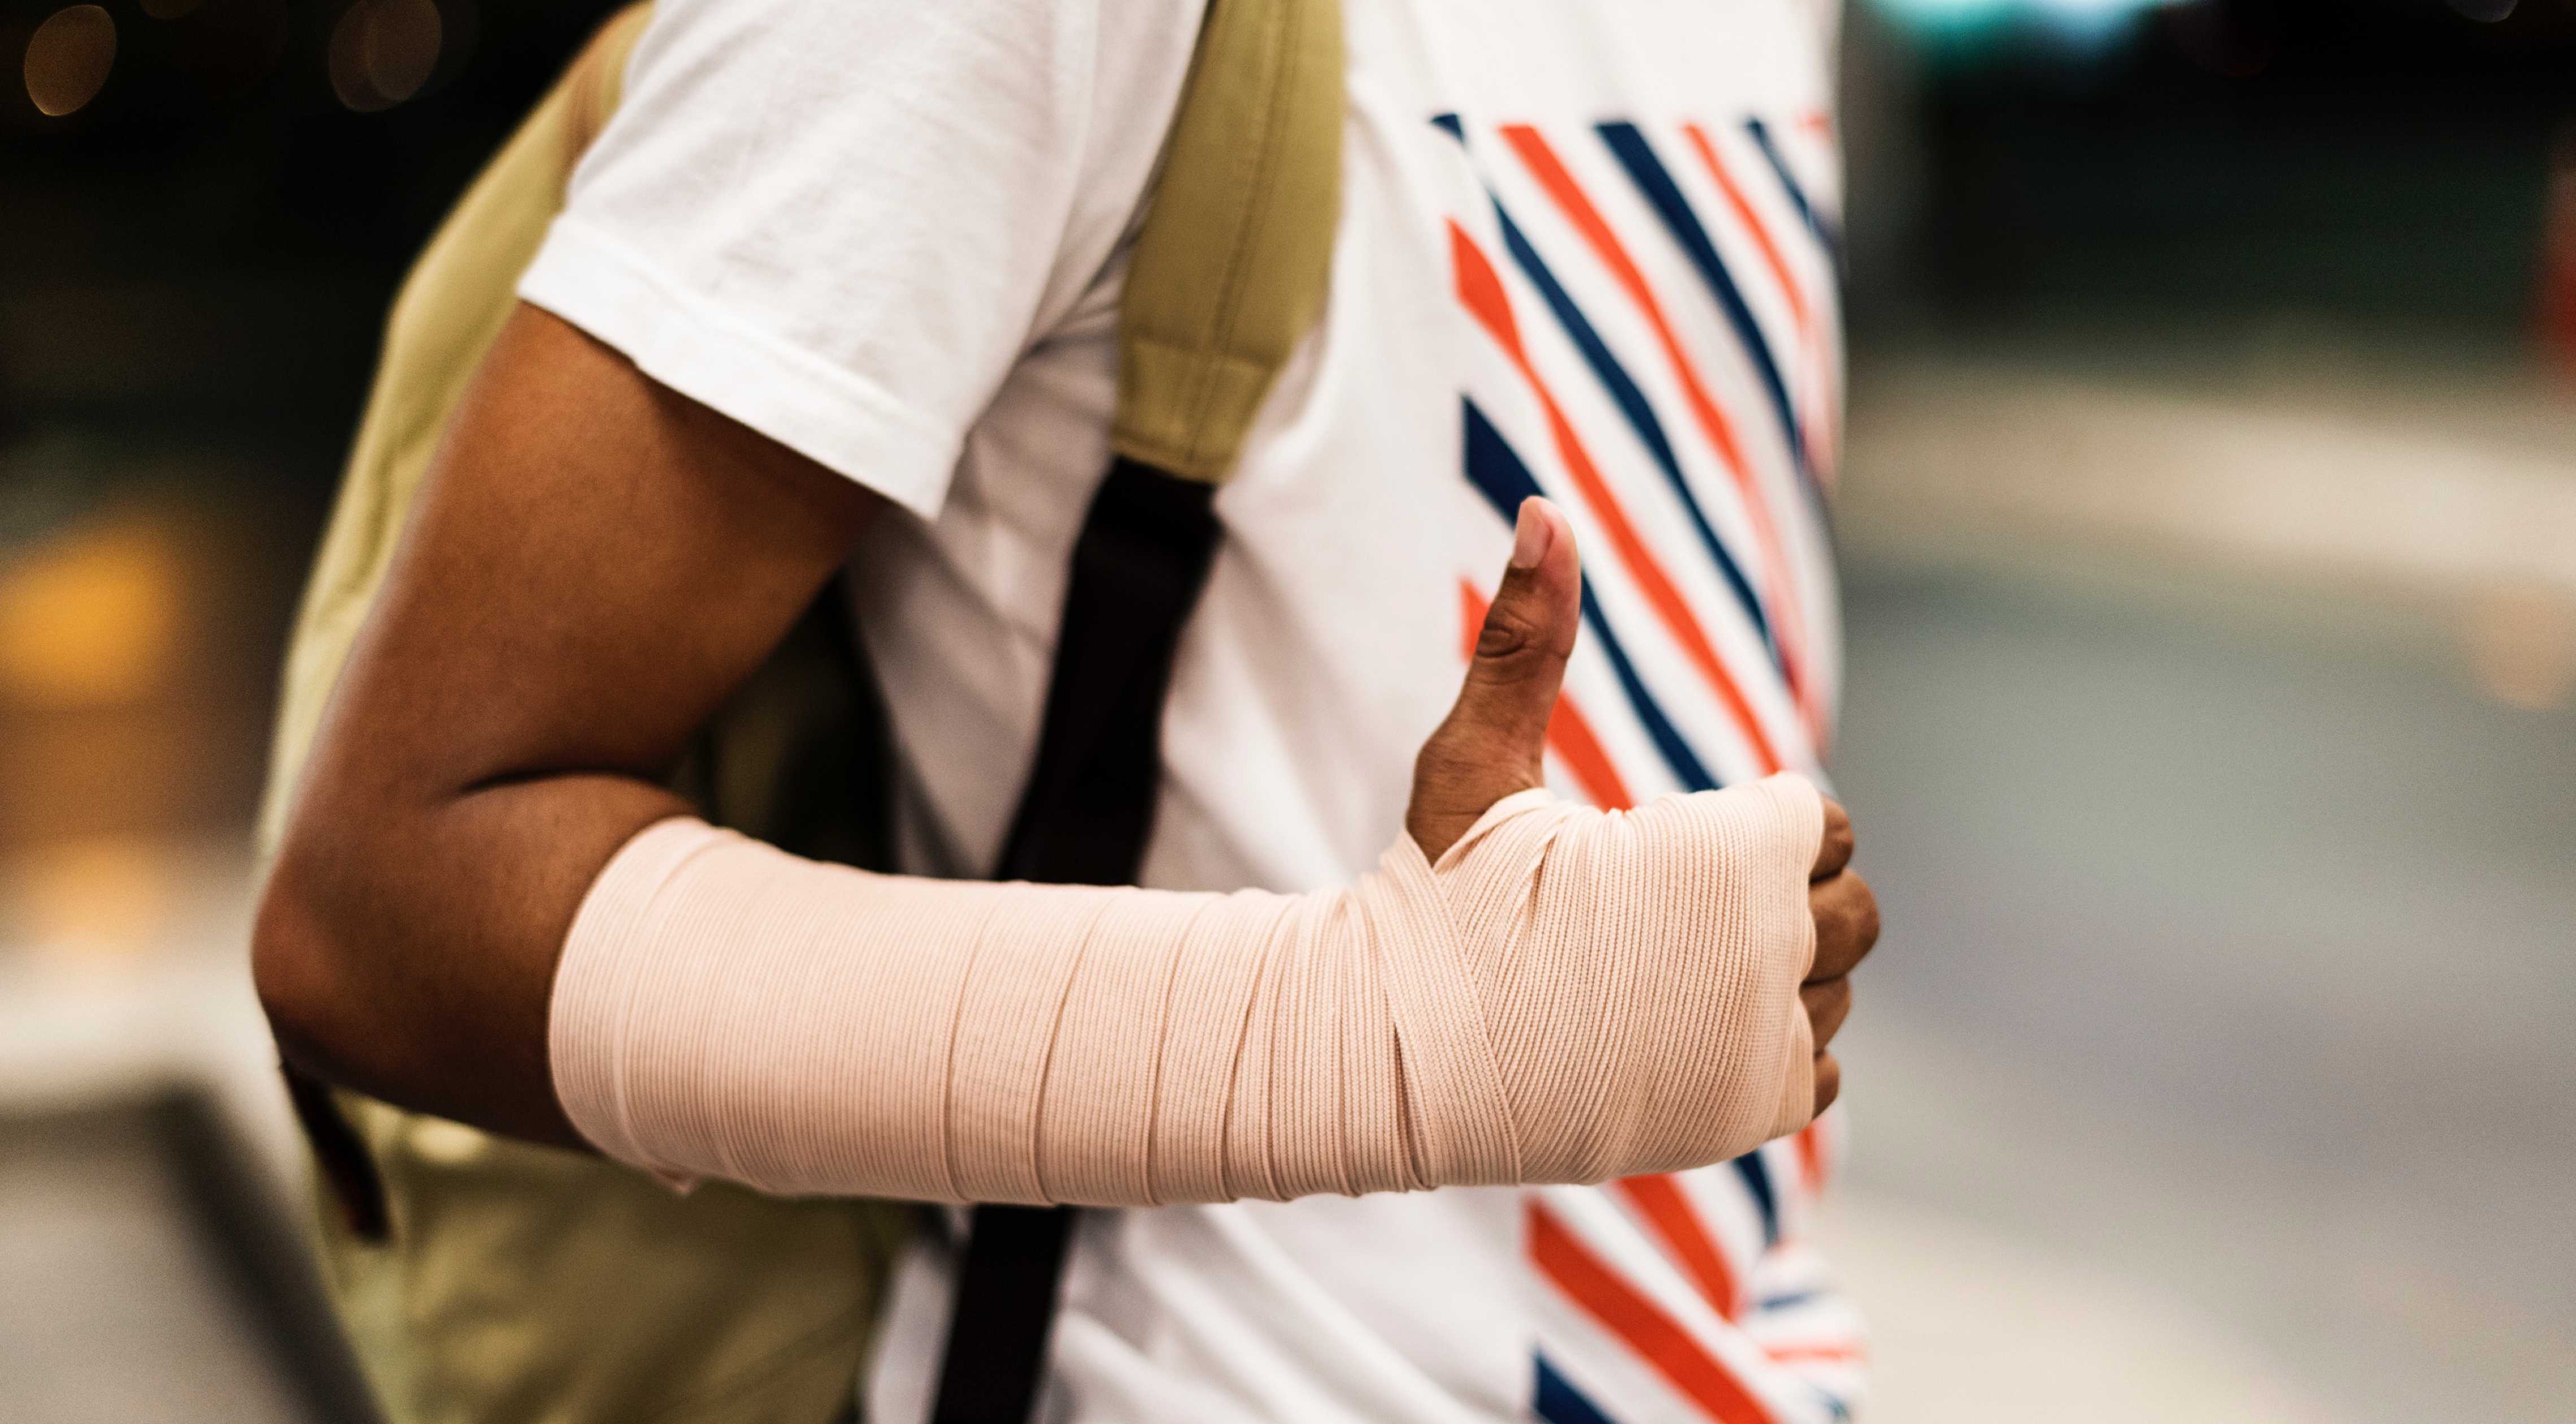 Nærbillede af en brækket arm af en bruger af hændelsesrapporteringsappen.